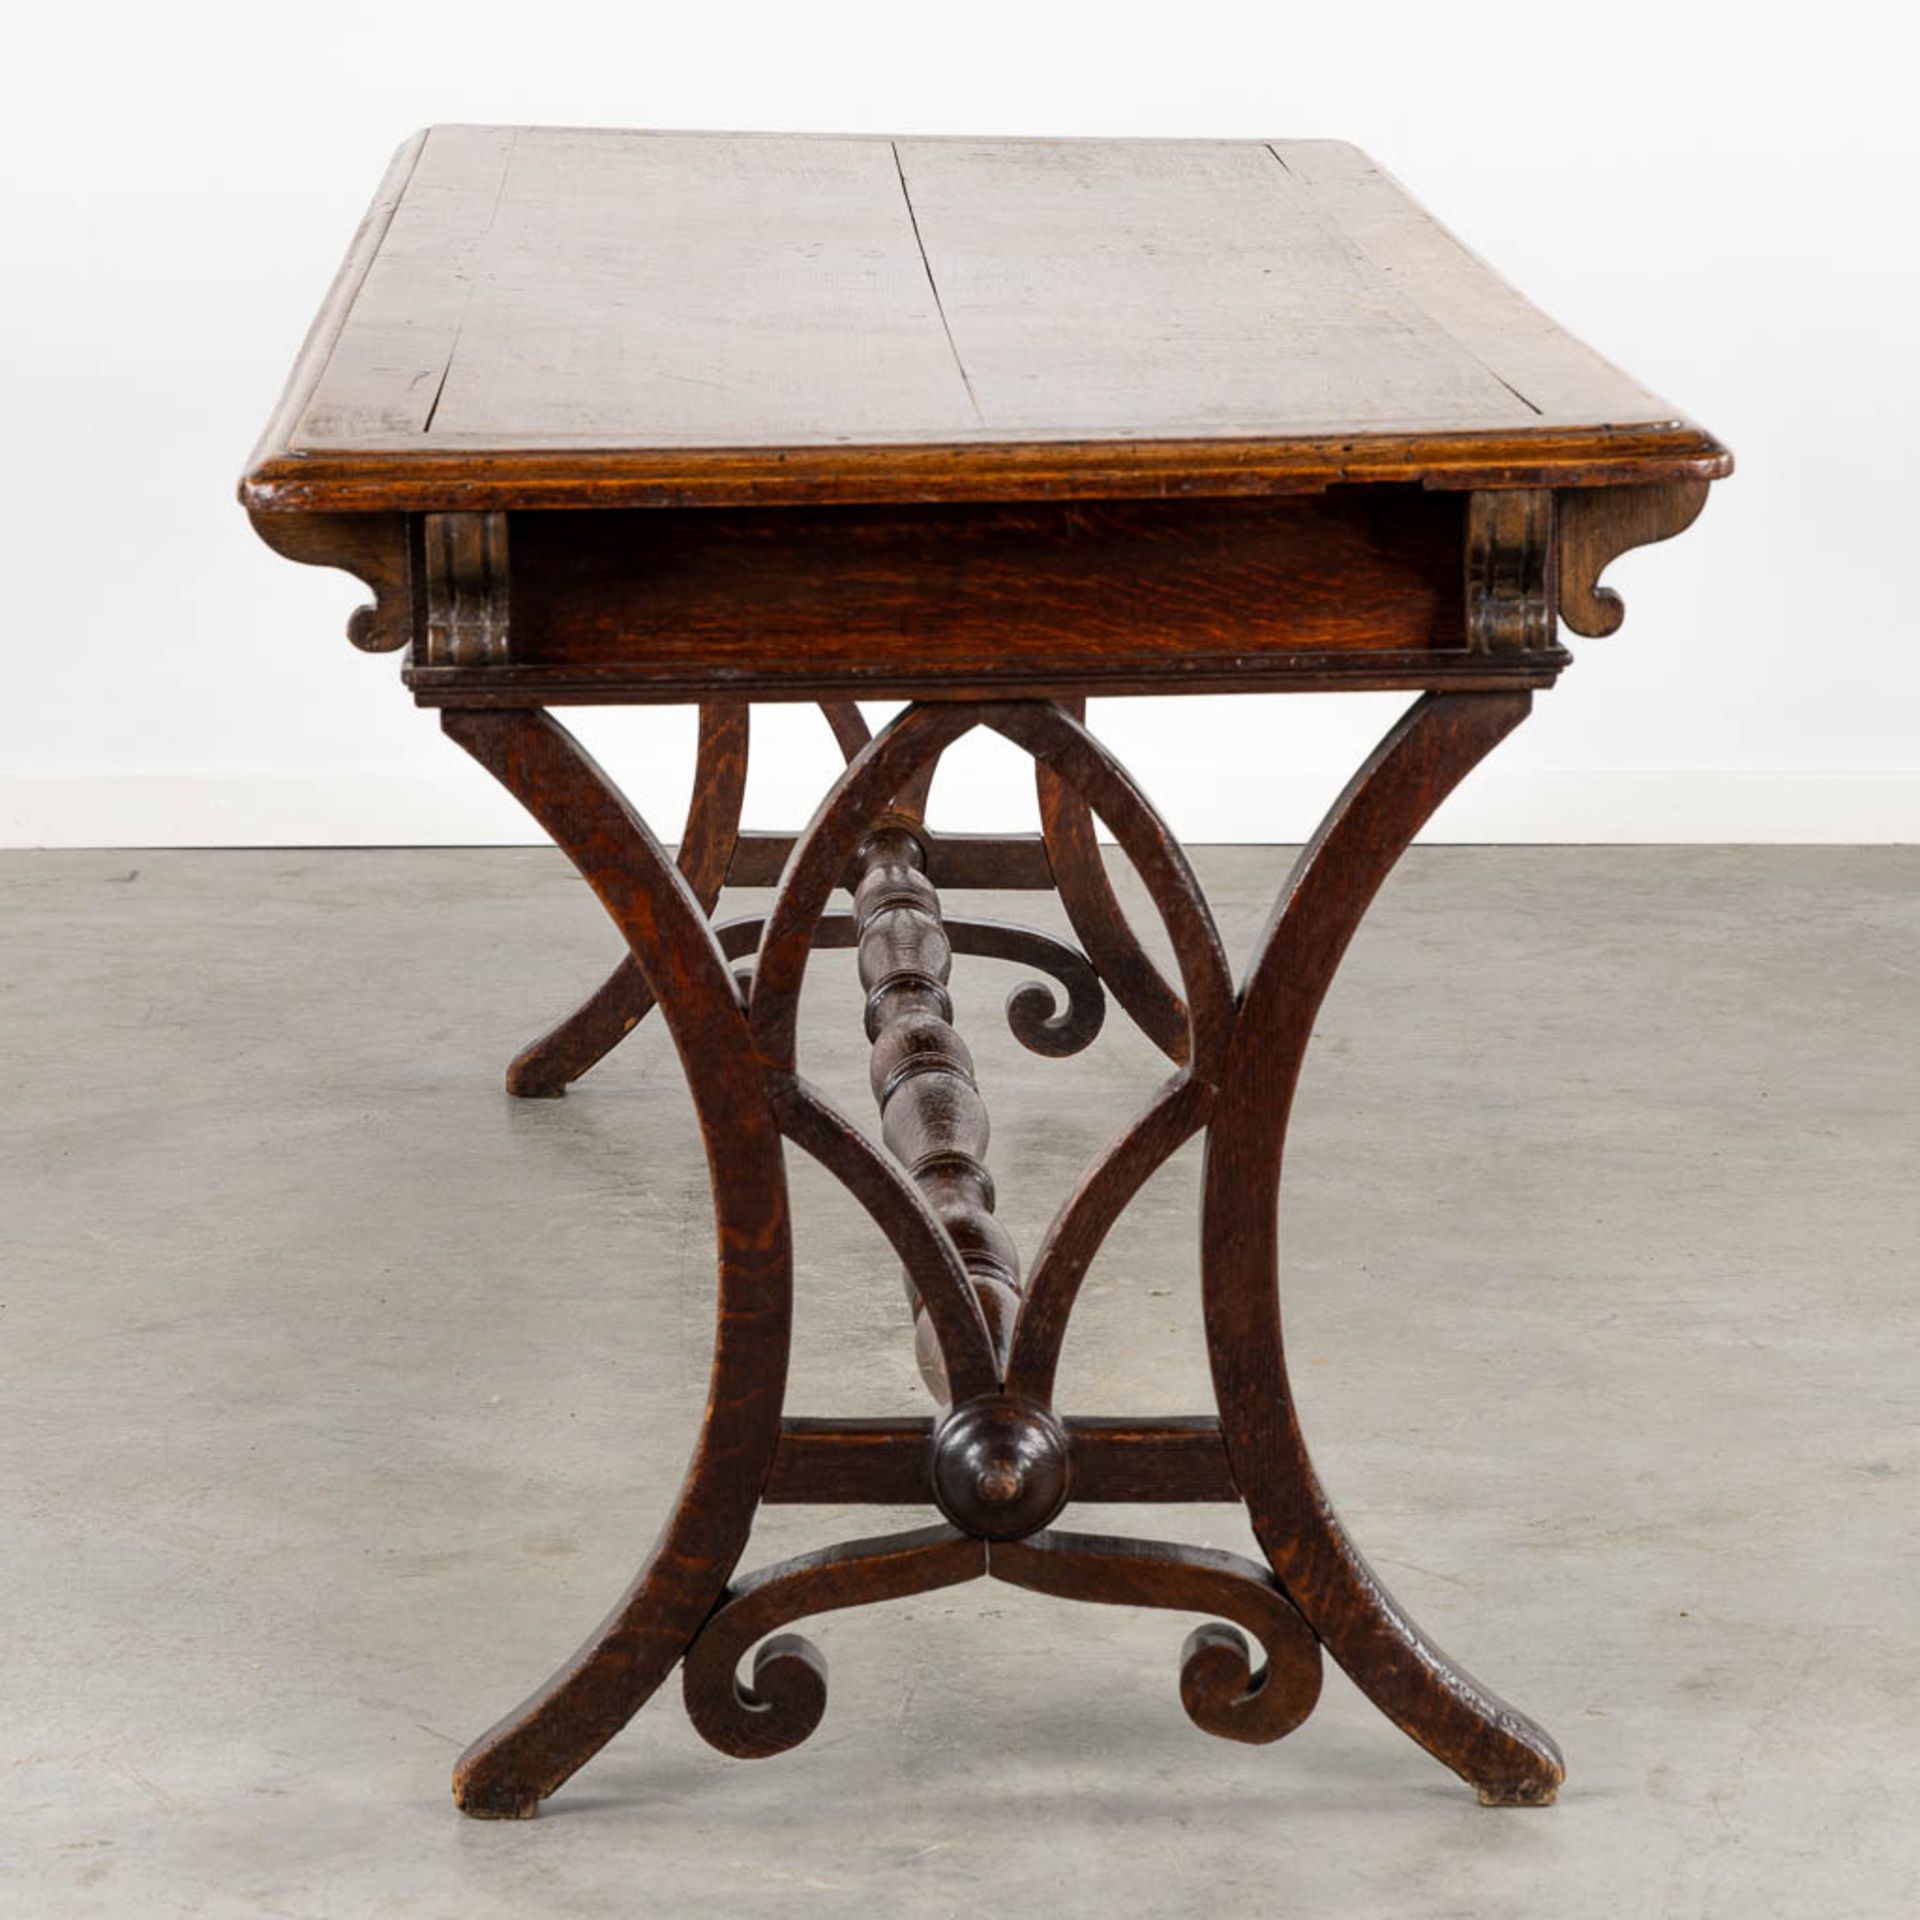 An antique desk/table with sculptures and a drawer, oak. 19th C. (L:77 x W:217 x H:76 cm) - Bild 7 aus 13